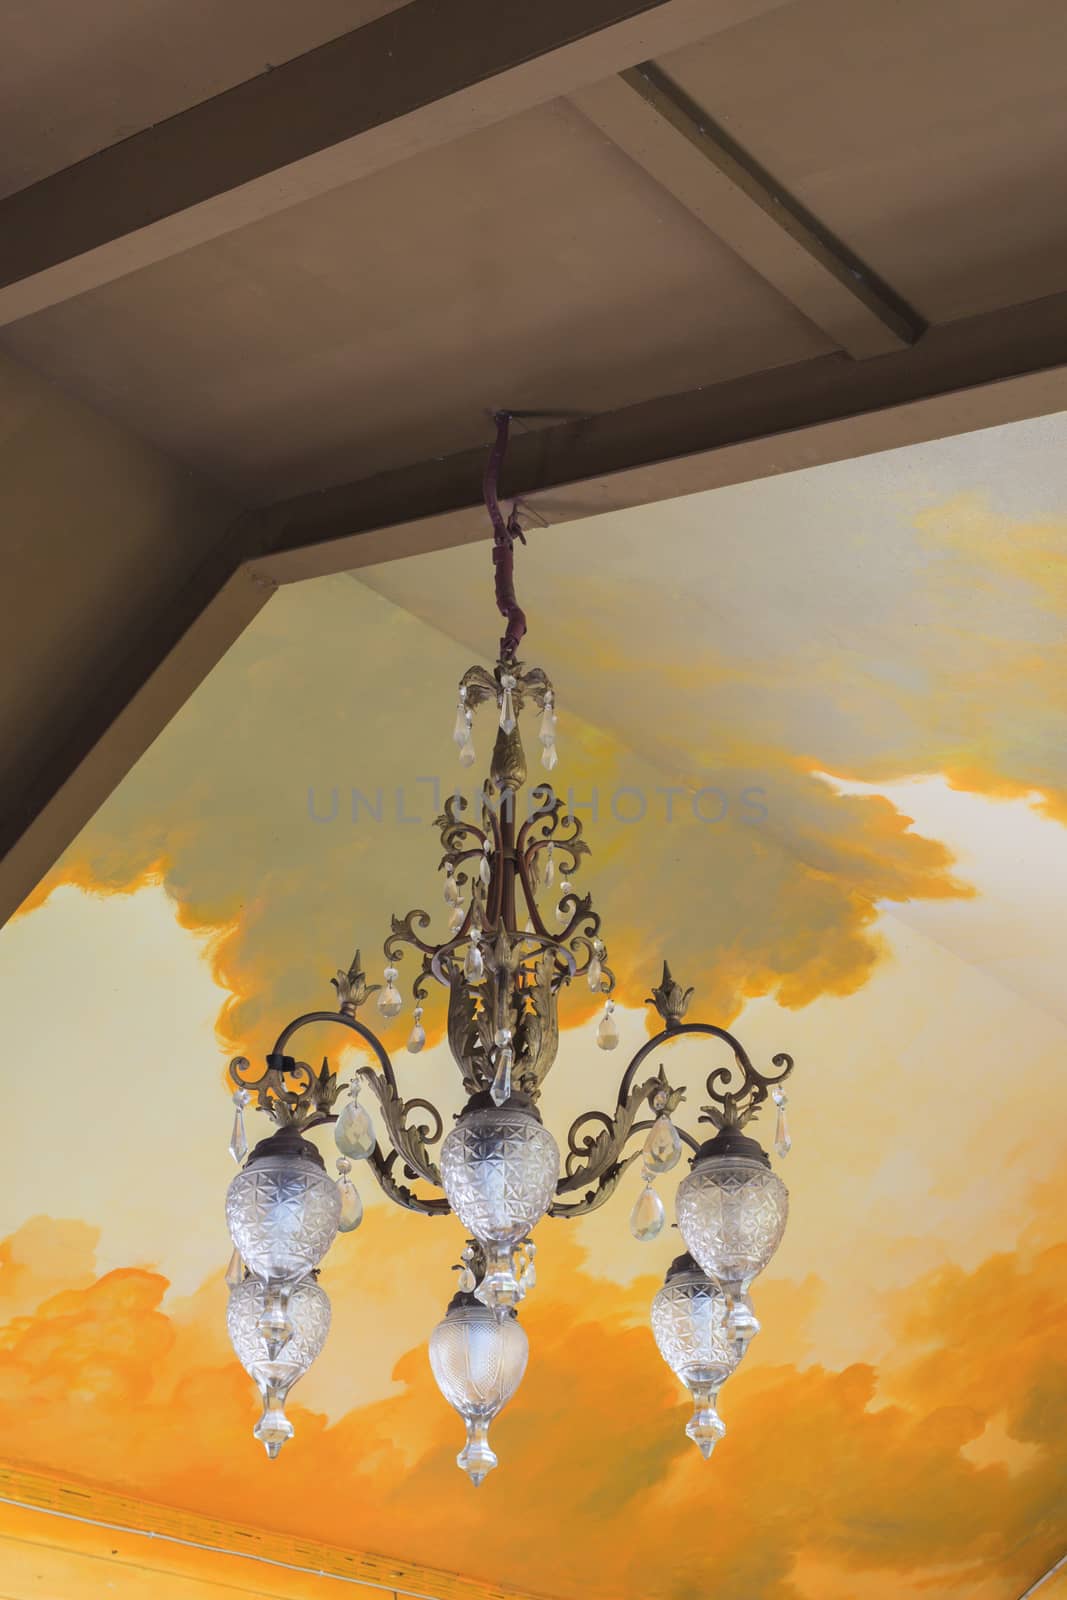 Vintage Crystal chandelier on ceiling by FrameAngel